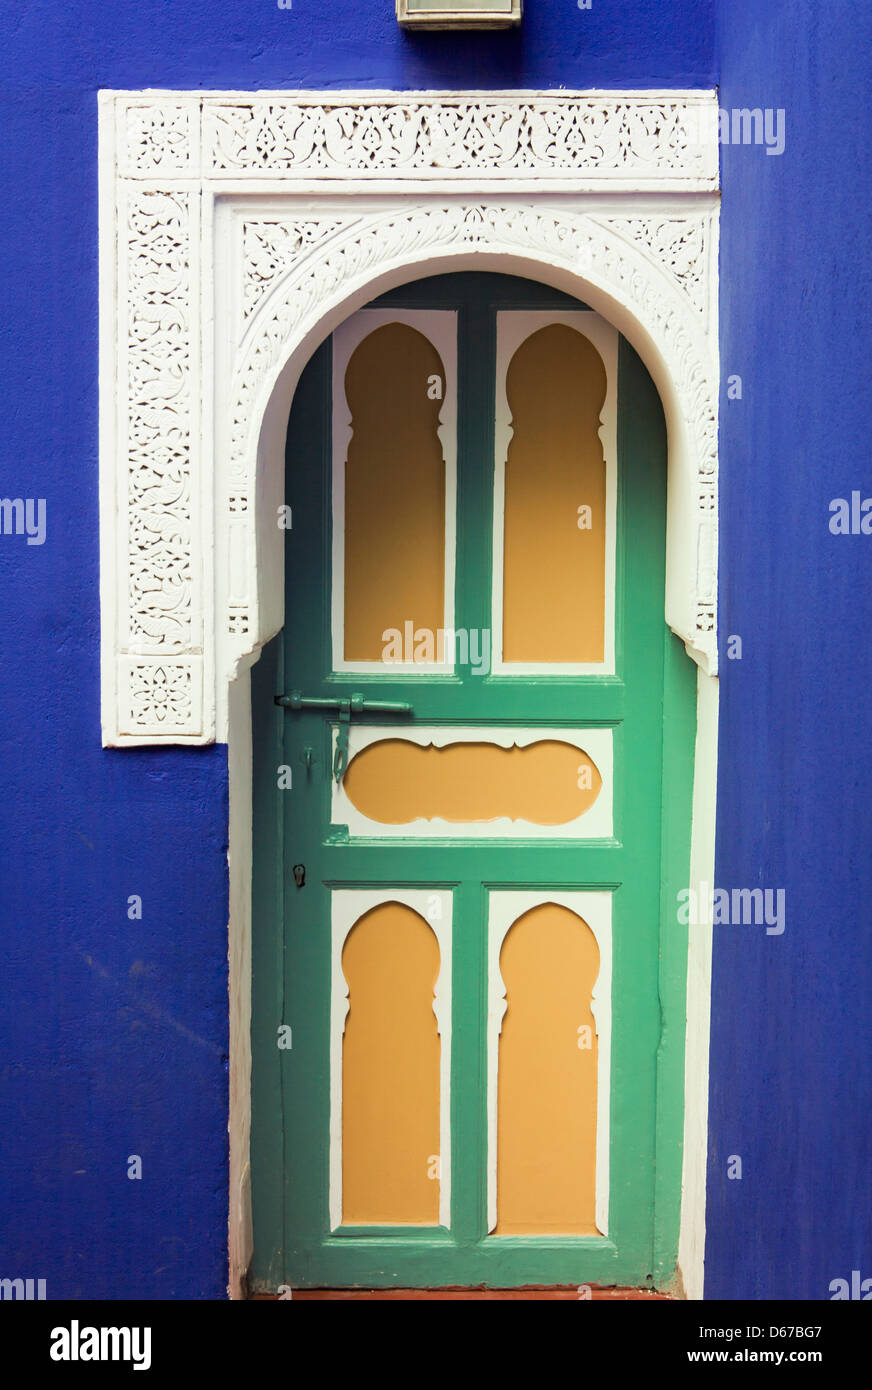 Le jardin Majorelle, le Musée d'Art Islamique, Marrakech ou Marrakech, Maroc. L'architecture typique. Banque D'Images